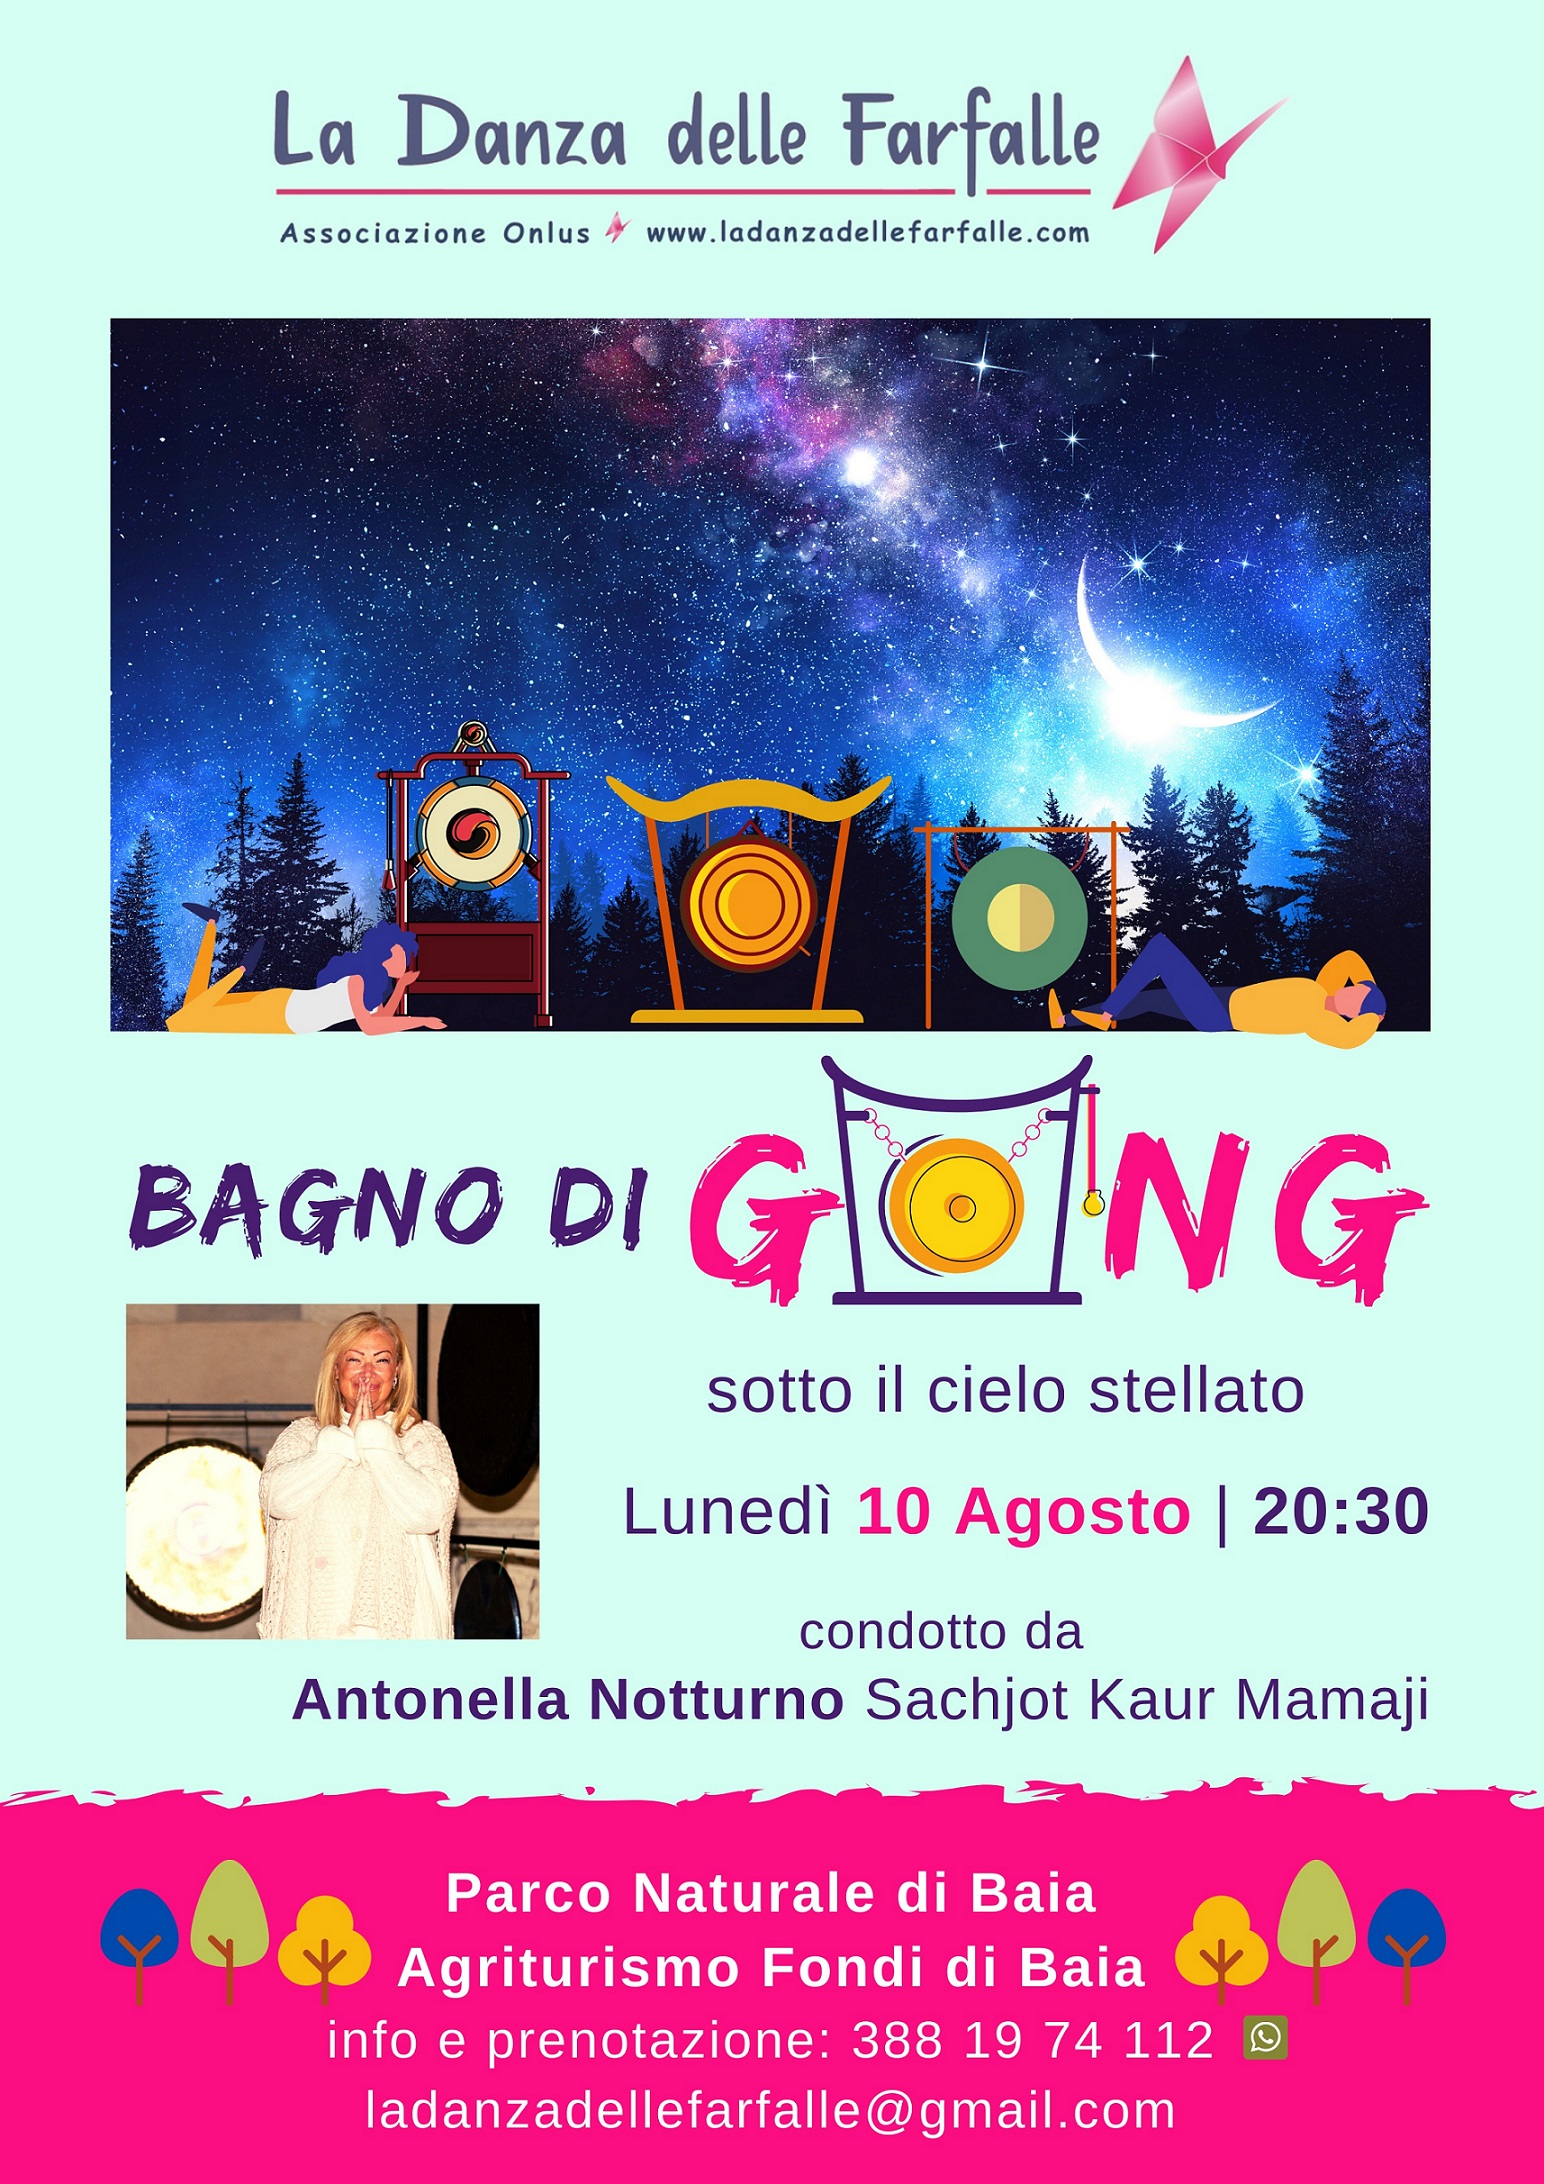 Bagno di Gong sotto le stelle 10 agosto 2020 sito